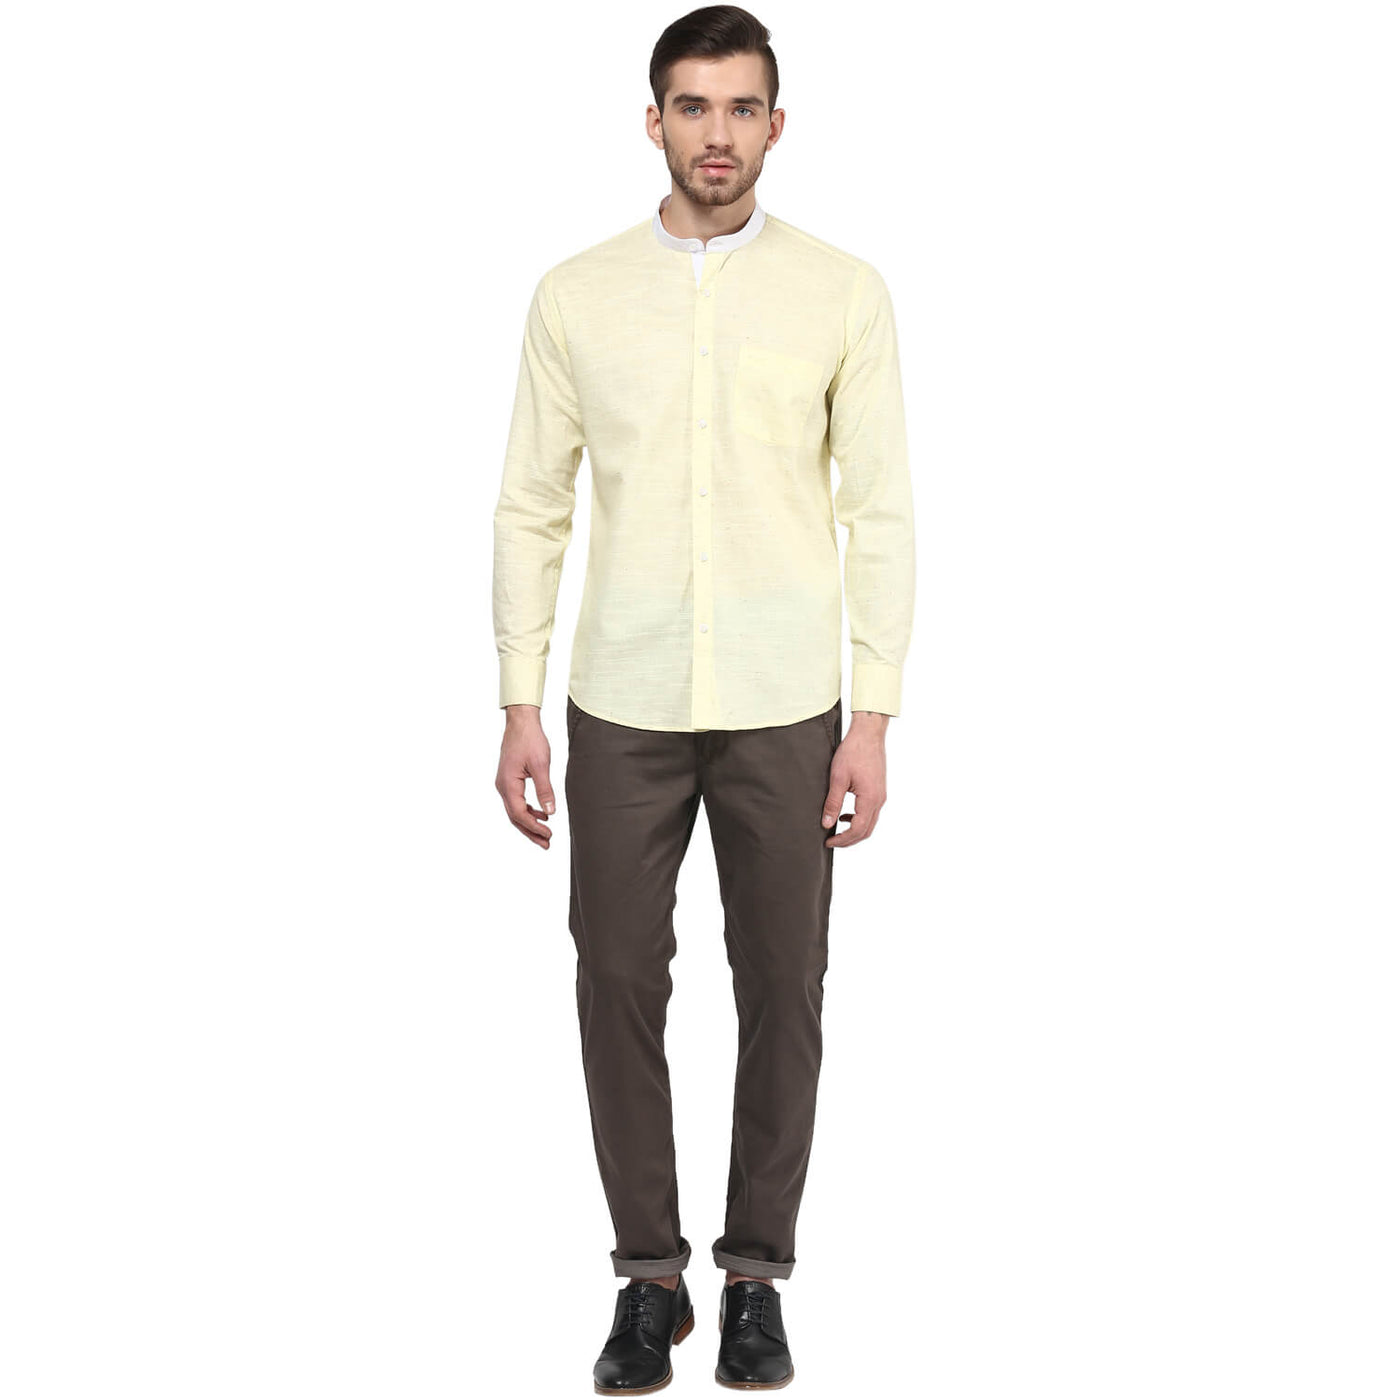 Premium 100% Cotton Shirt Yellow Color